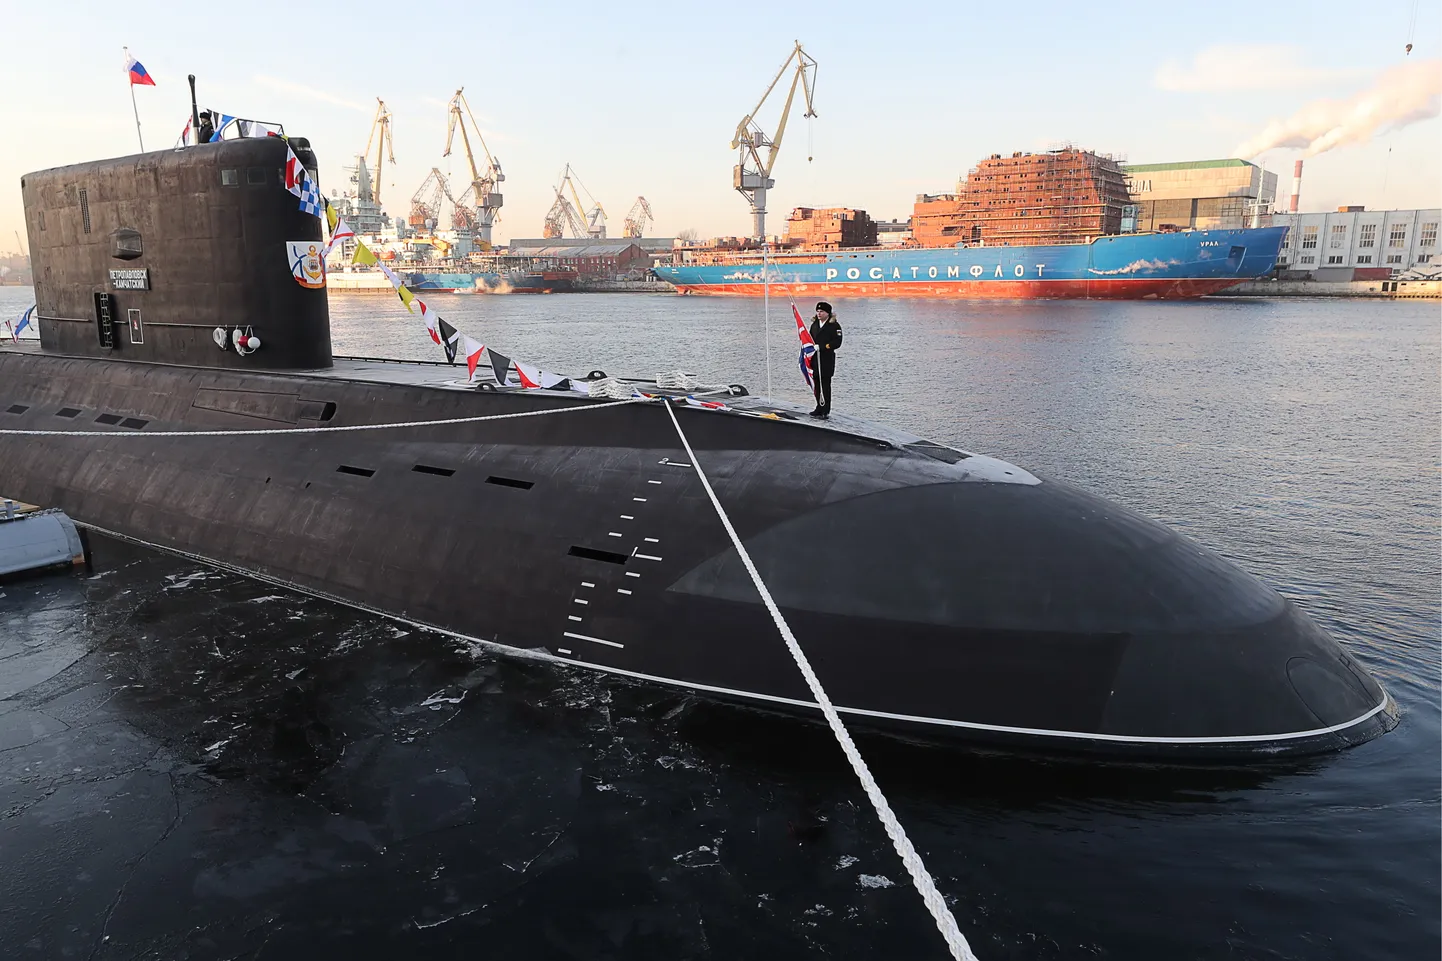 Российская подводная лодка "Петропавловск-Камчатский" на судостроительном заводе в Петербурге.